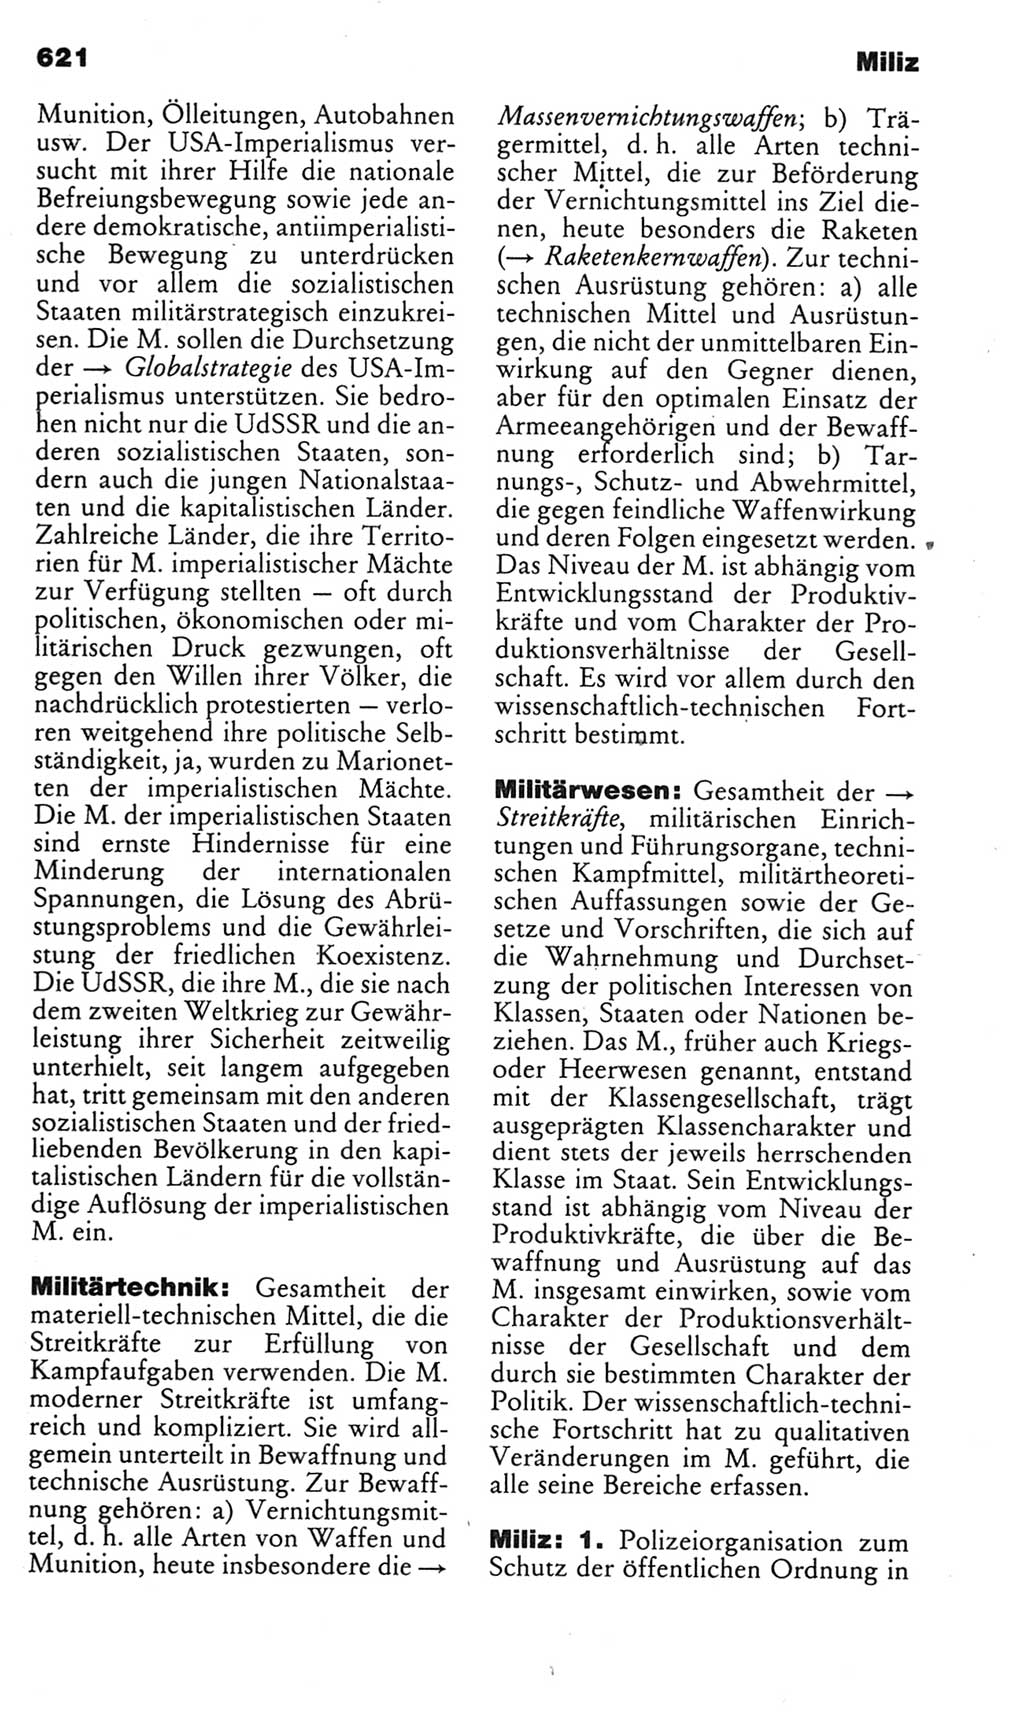 Kleines politisches Wörterbuch [Deutsche Demokratische Republik (DDR)] 1985, Seite 621 (Kl. pol. Wb. DDR 1985, S. 621)